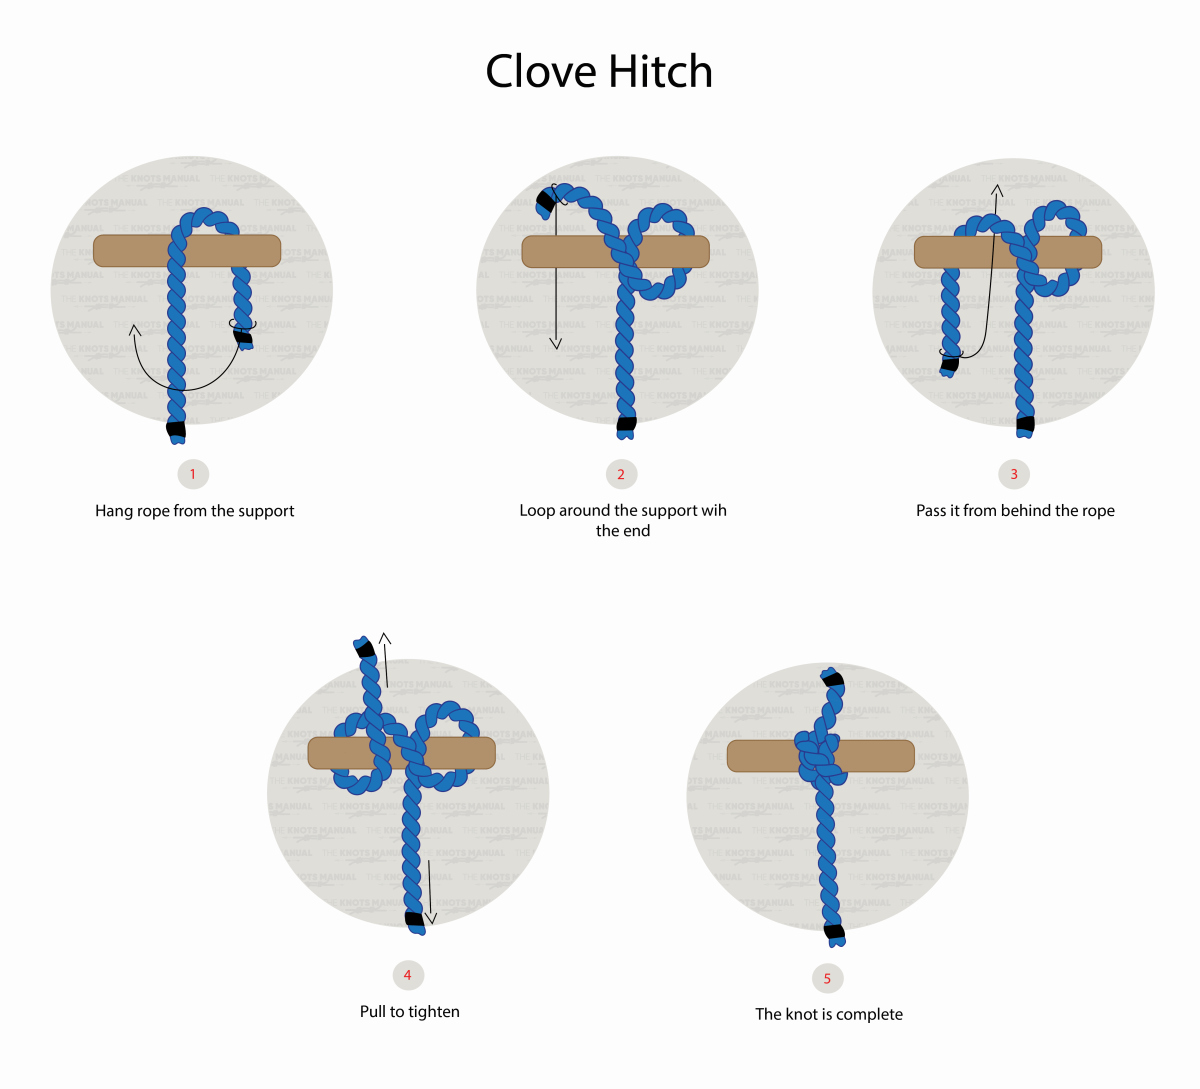 https://www.theknotsmanual.com/wp-content/uploads/hitch-knots/clove-hitch-knot/Clove-Hitch-Knot.jpg